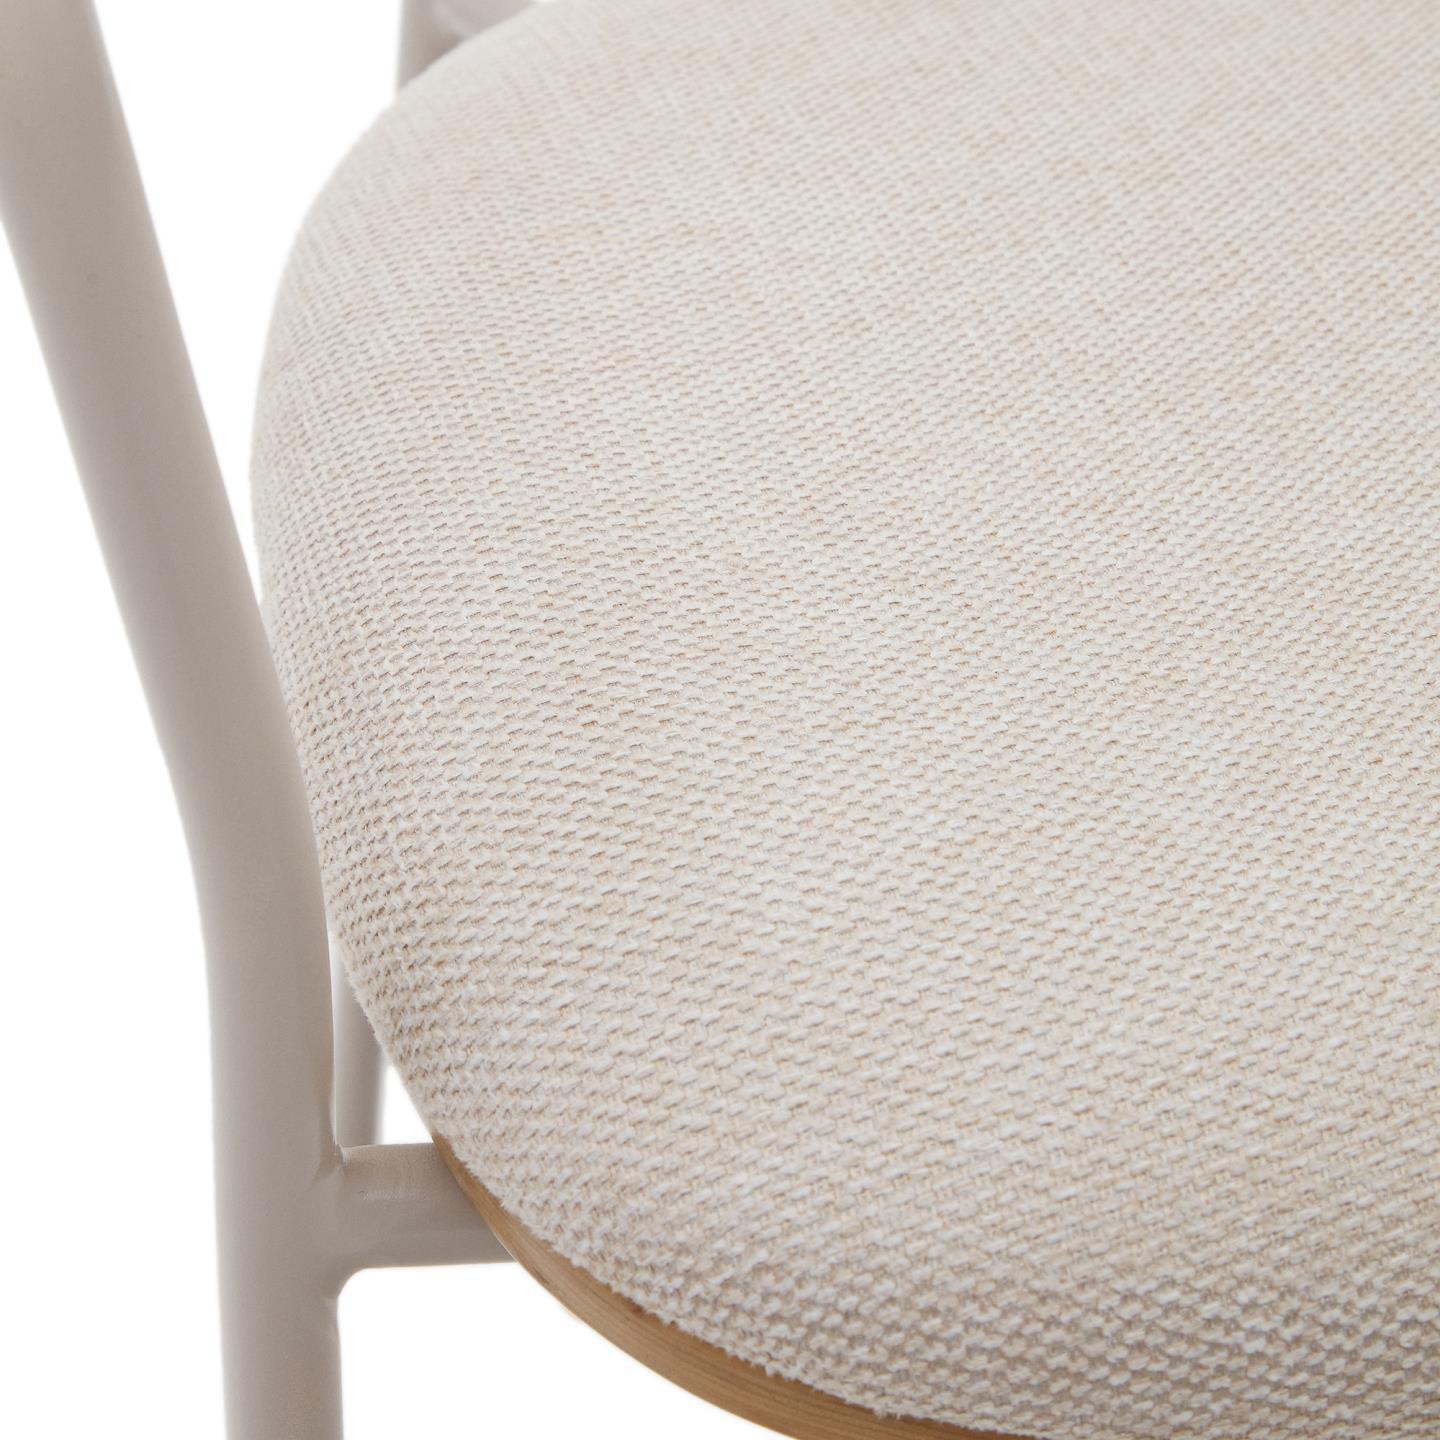 Krzesło MAUREEN okleina dębowa z beżową podstawą La Forma    Eye on Design